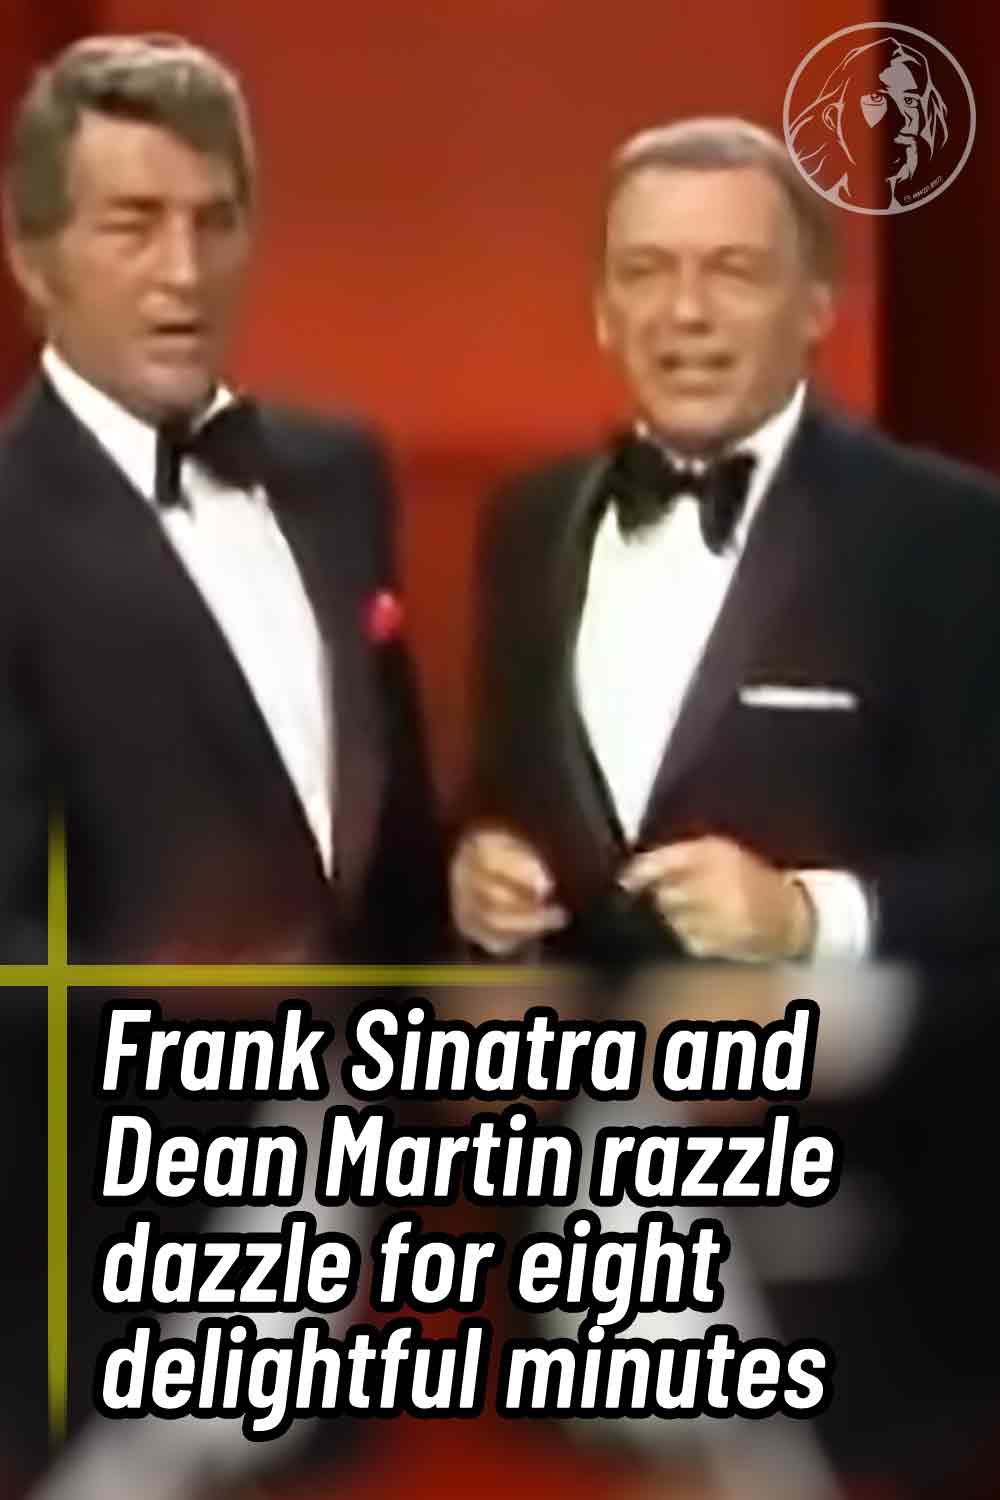 Frank Sinatra and Dean Martin razzle dazzle for eight delightful minutes